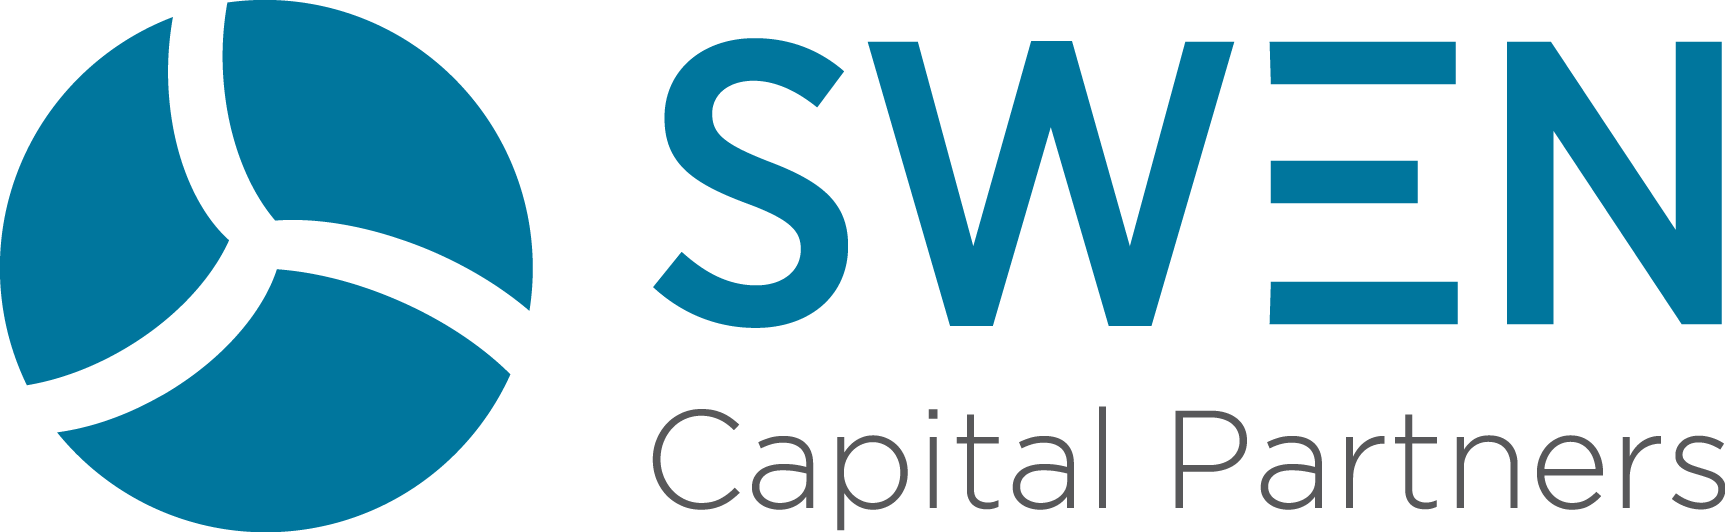 SwenCapitalPartners logo 4hd